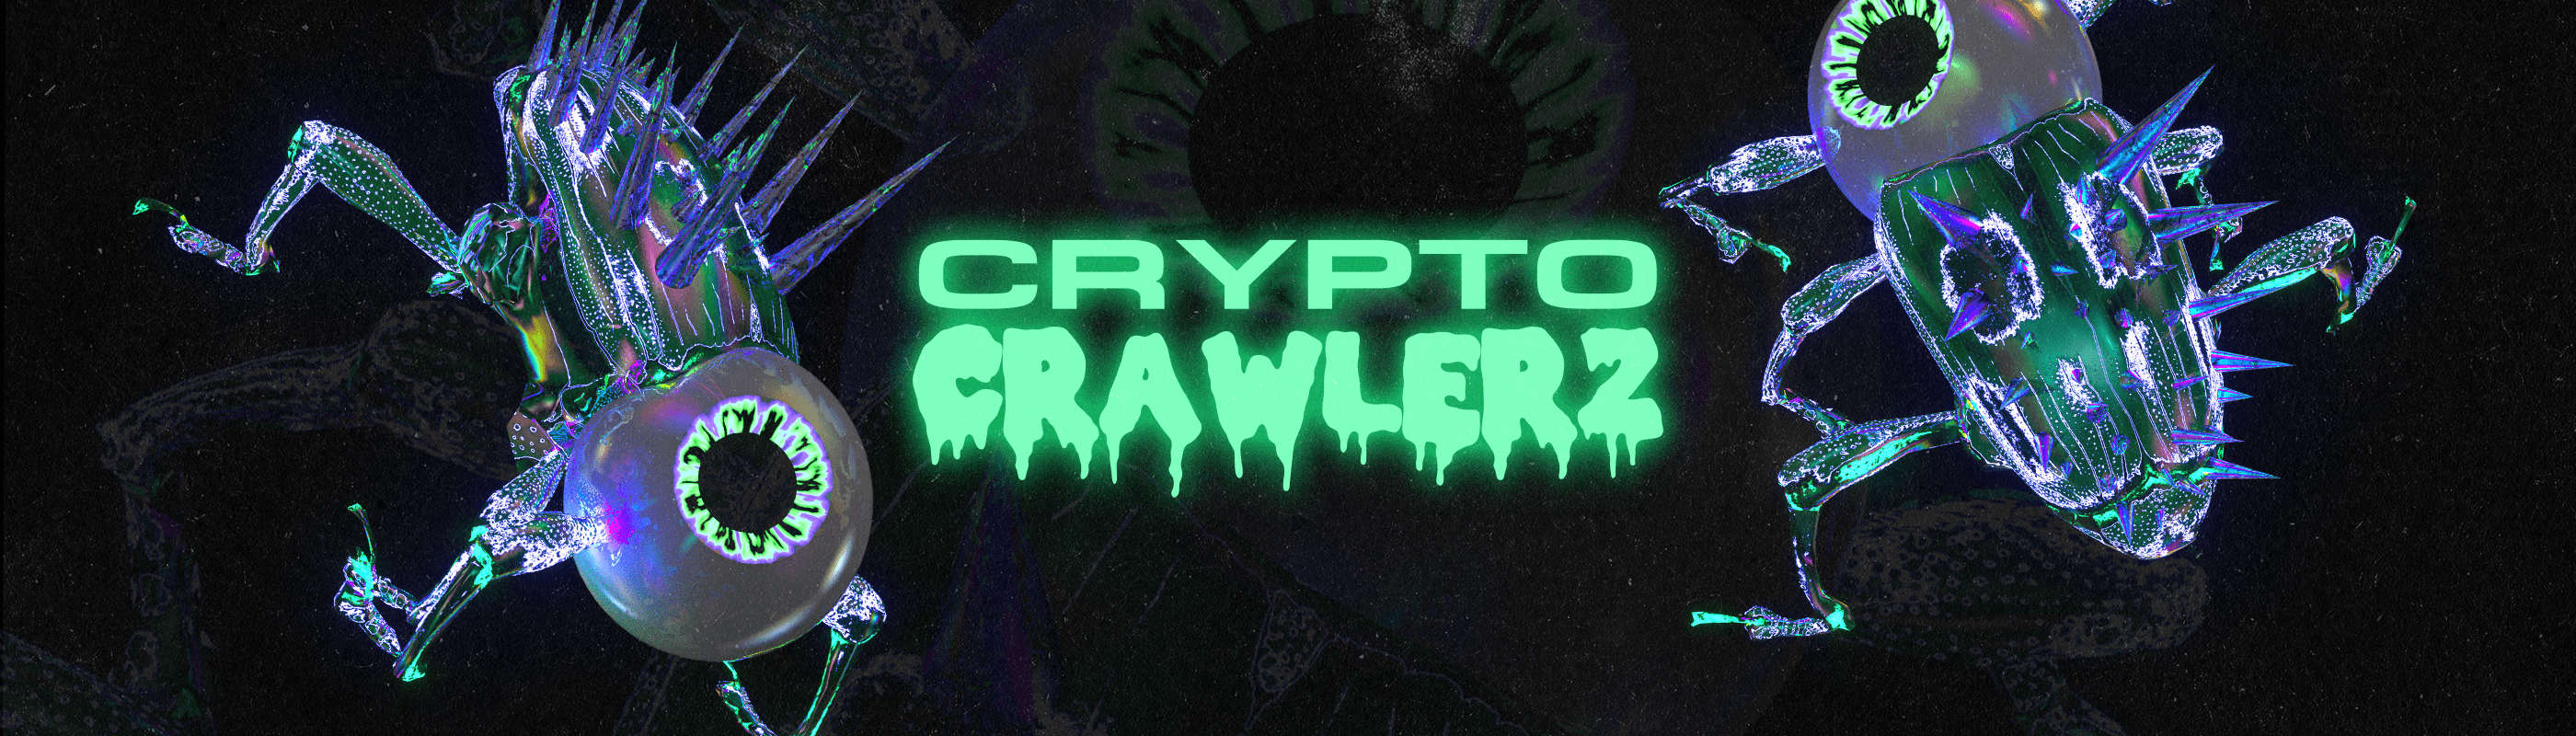 cryptocrawlerzvault banner